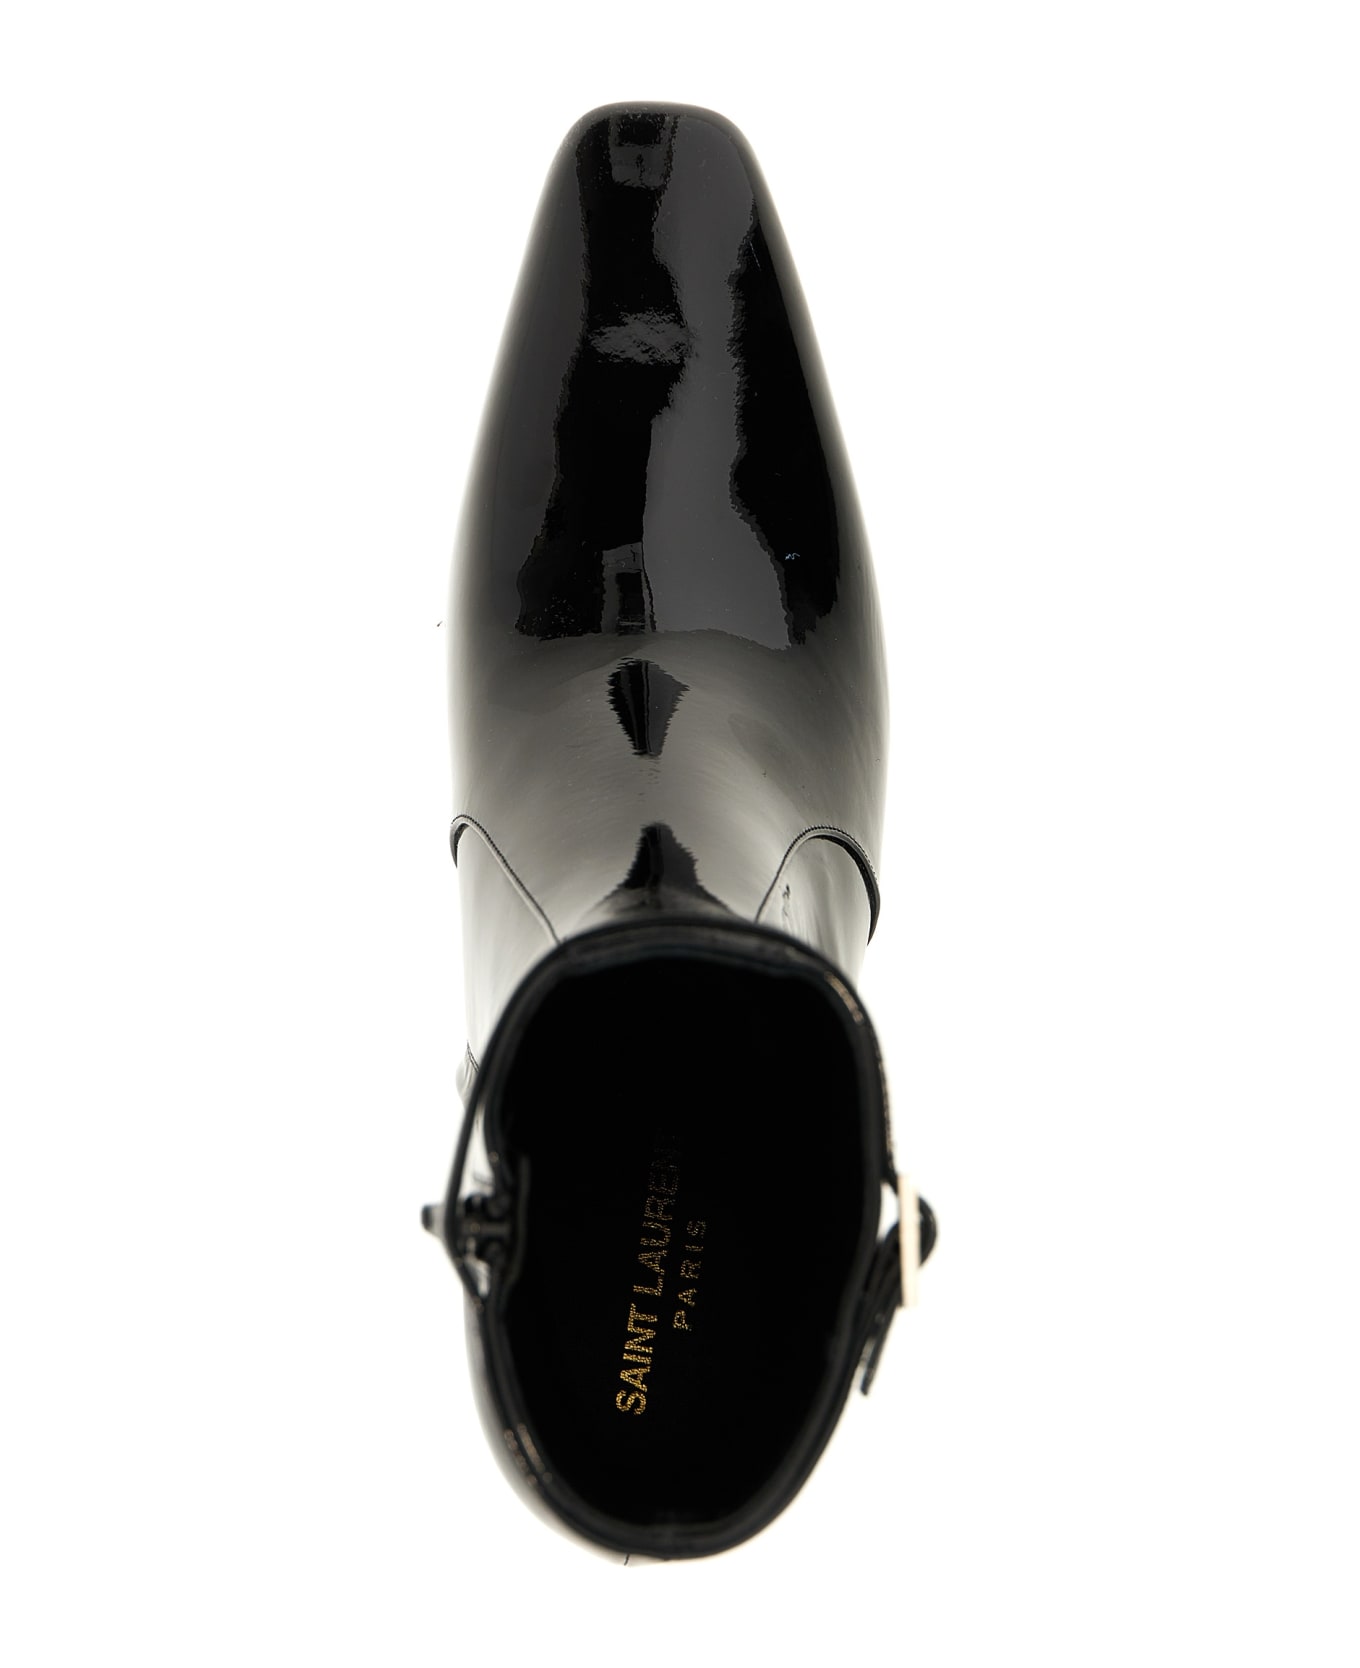 Saint Laurent 'betty' Ankle Boots - Black  